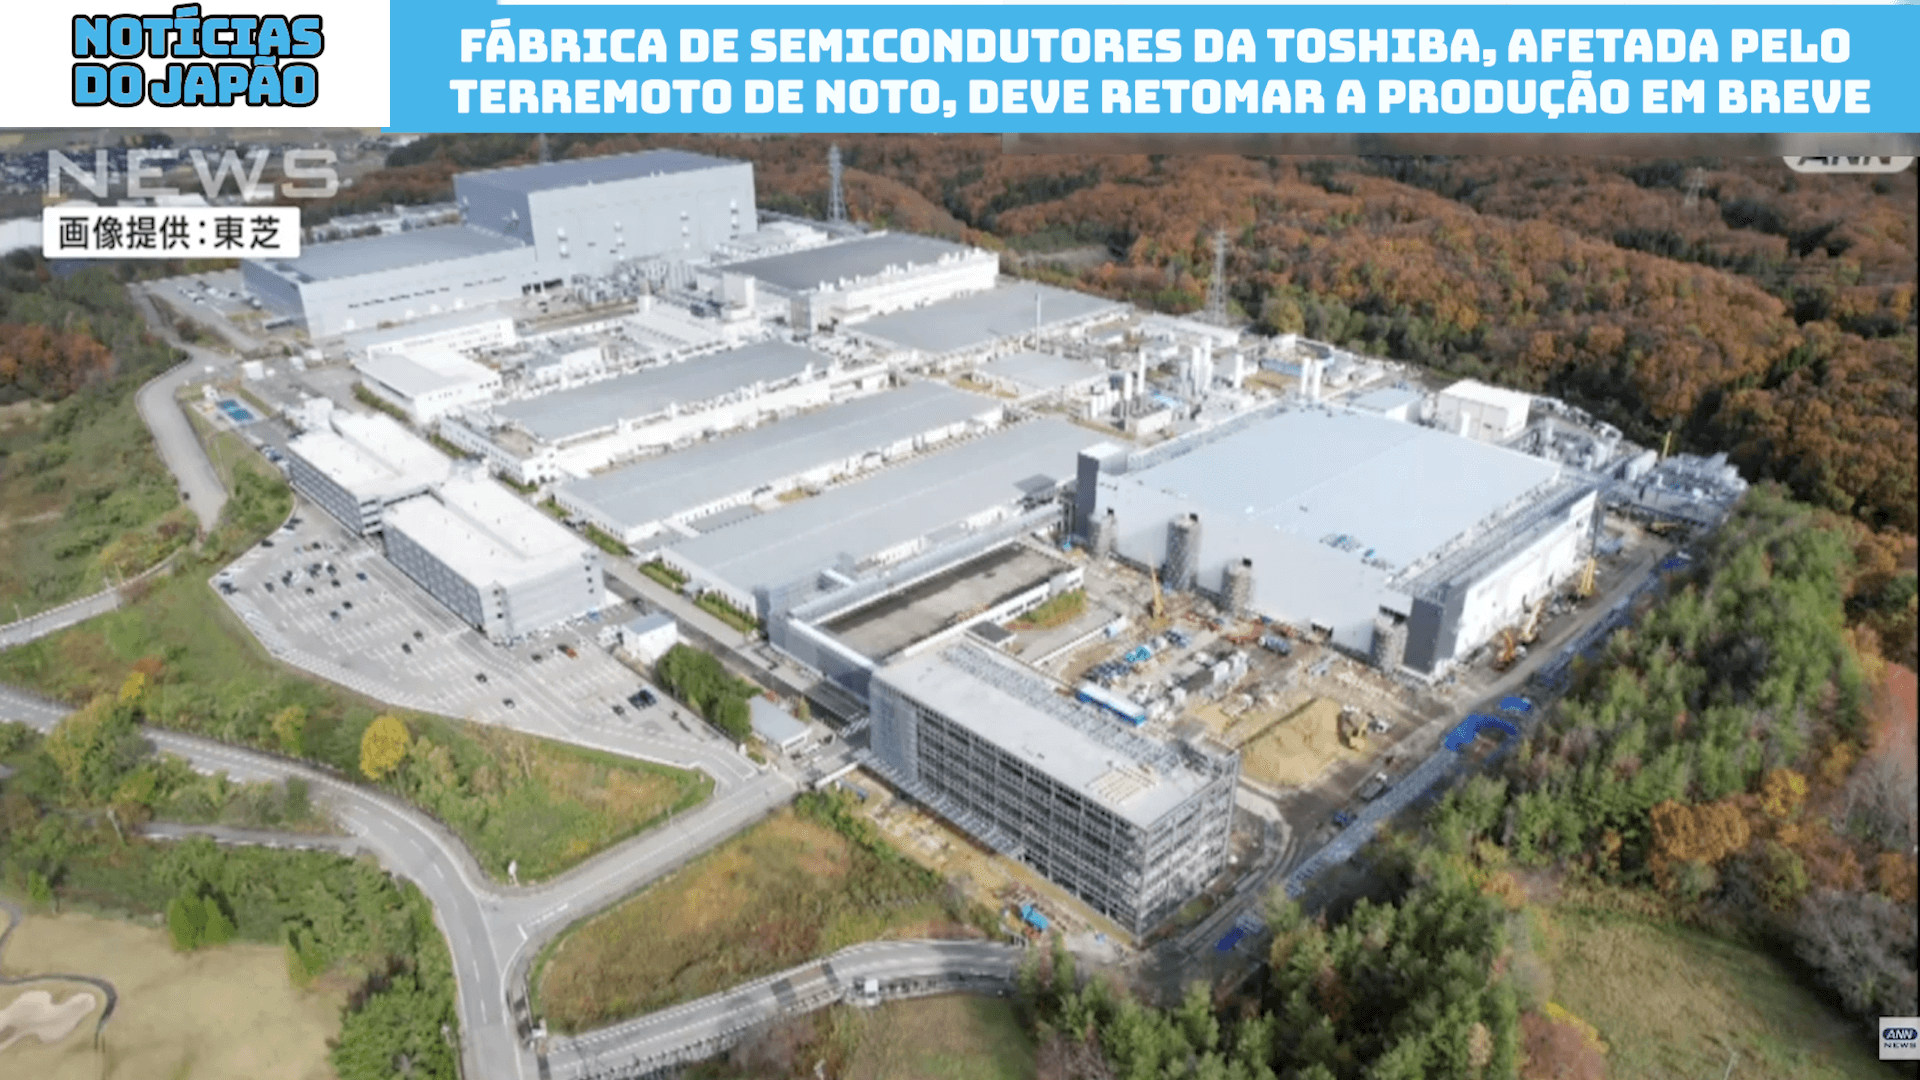 Fábrica de semicondutores da Toshiba, afetada pelo Terremoto de Noto, deve retomar a produção em breve